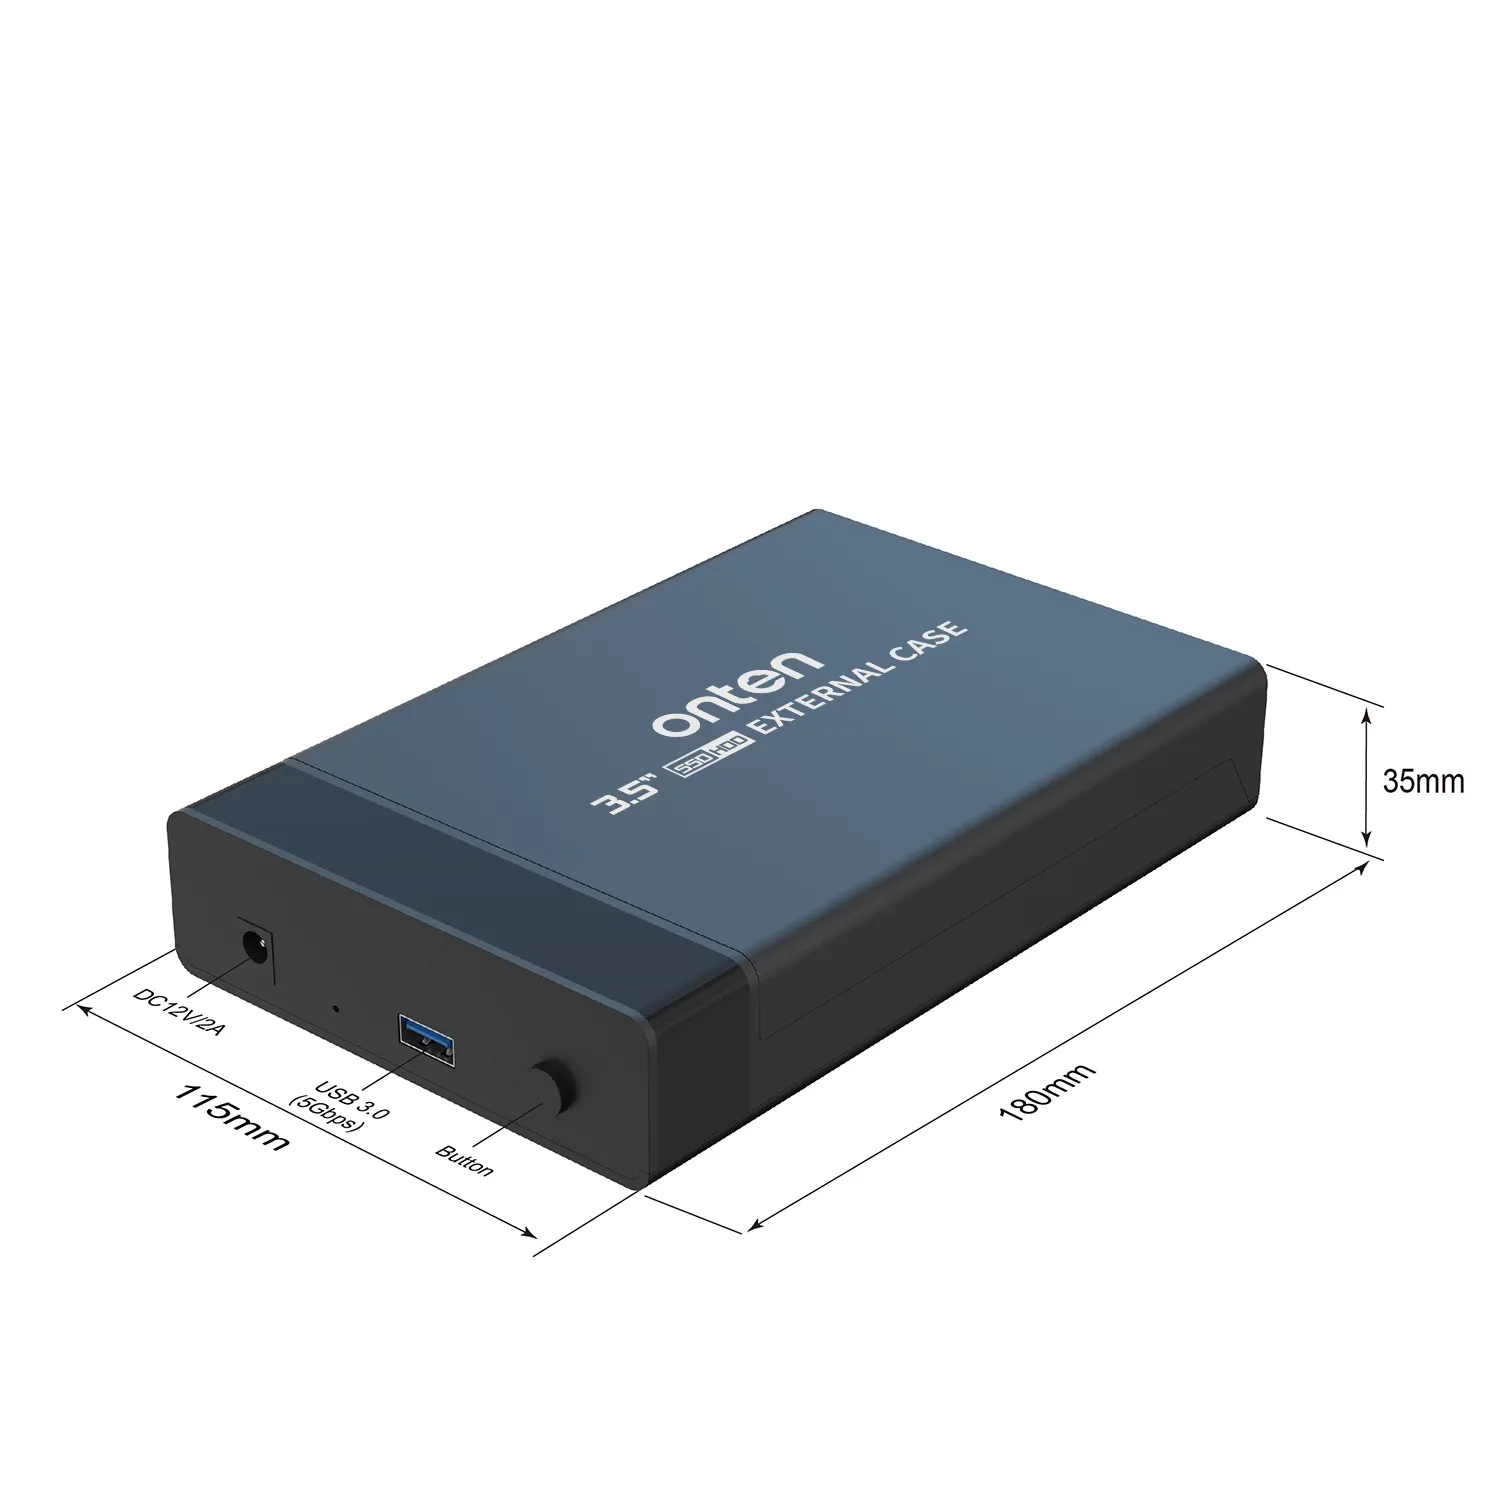 3.5 inç USB 3.0 SATA 5Gbps HD kutusu sabit disk harici HDD muhafaza bilgisayar için kablo ve şarj cihazı ile plastik kasa OTN-UHD3